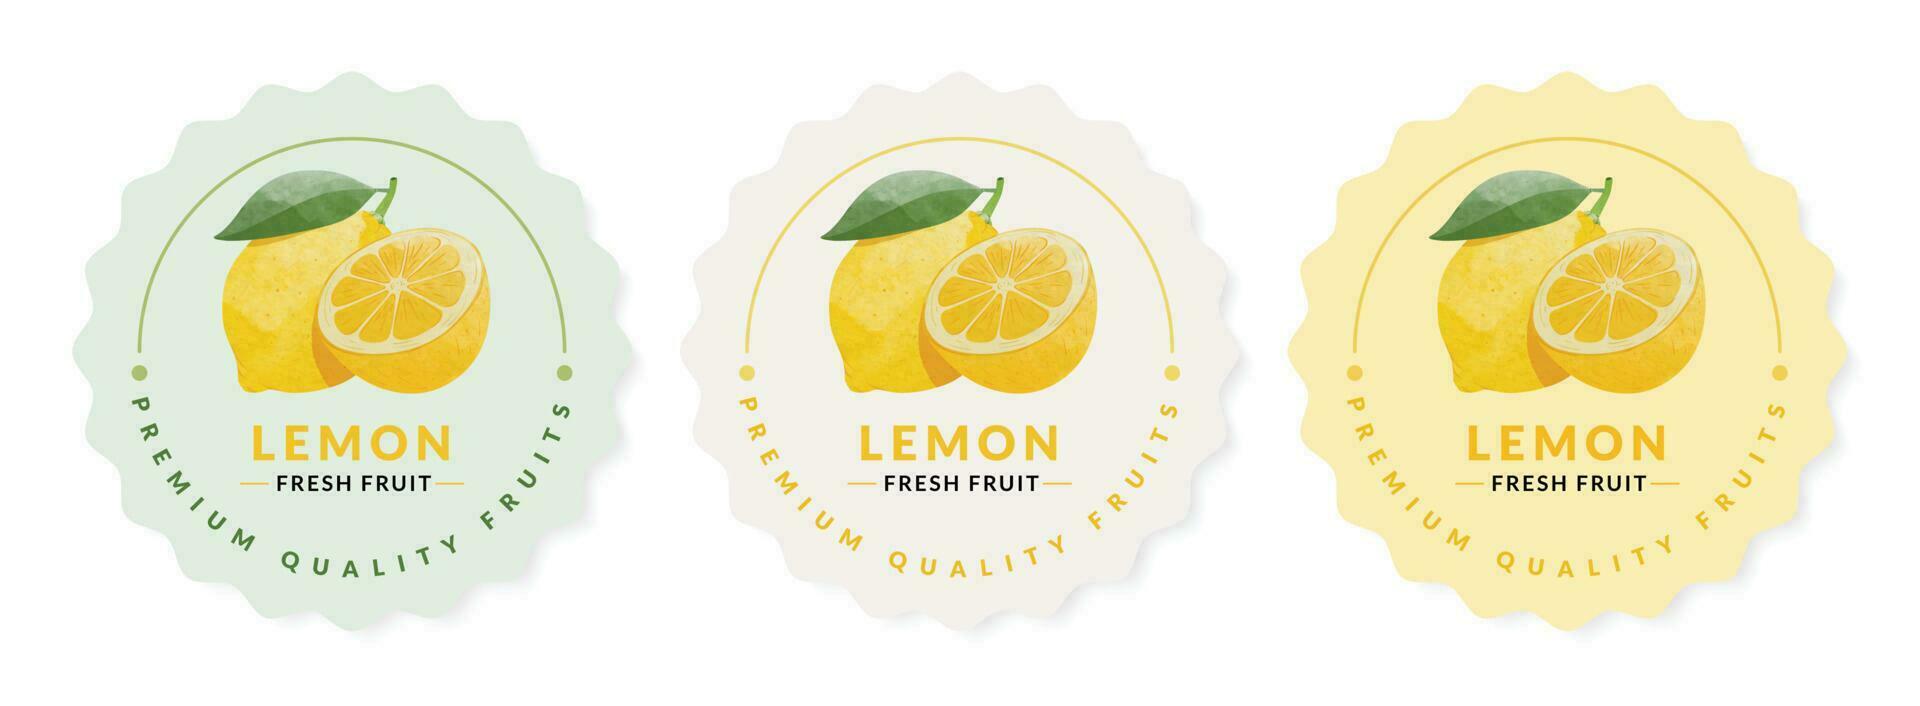 citron- förpackning design mallar, vattenfärg stil vektor illustration.